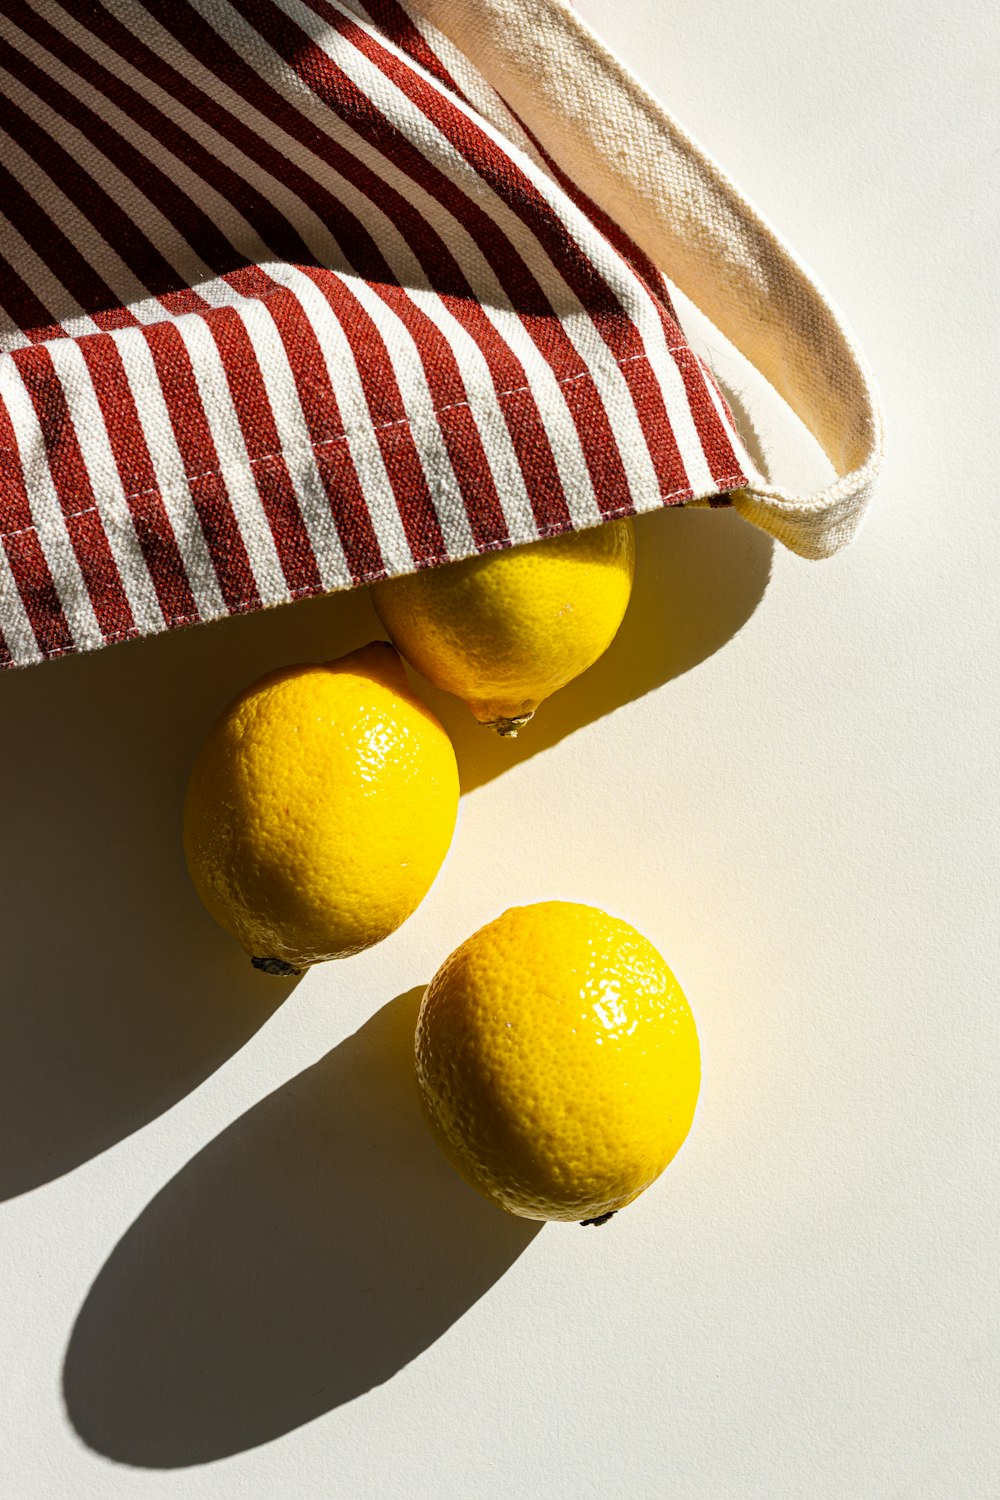 赤と白の縞模様の袋に入った3つのレモン